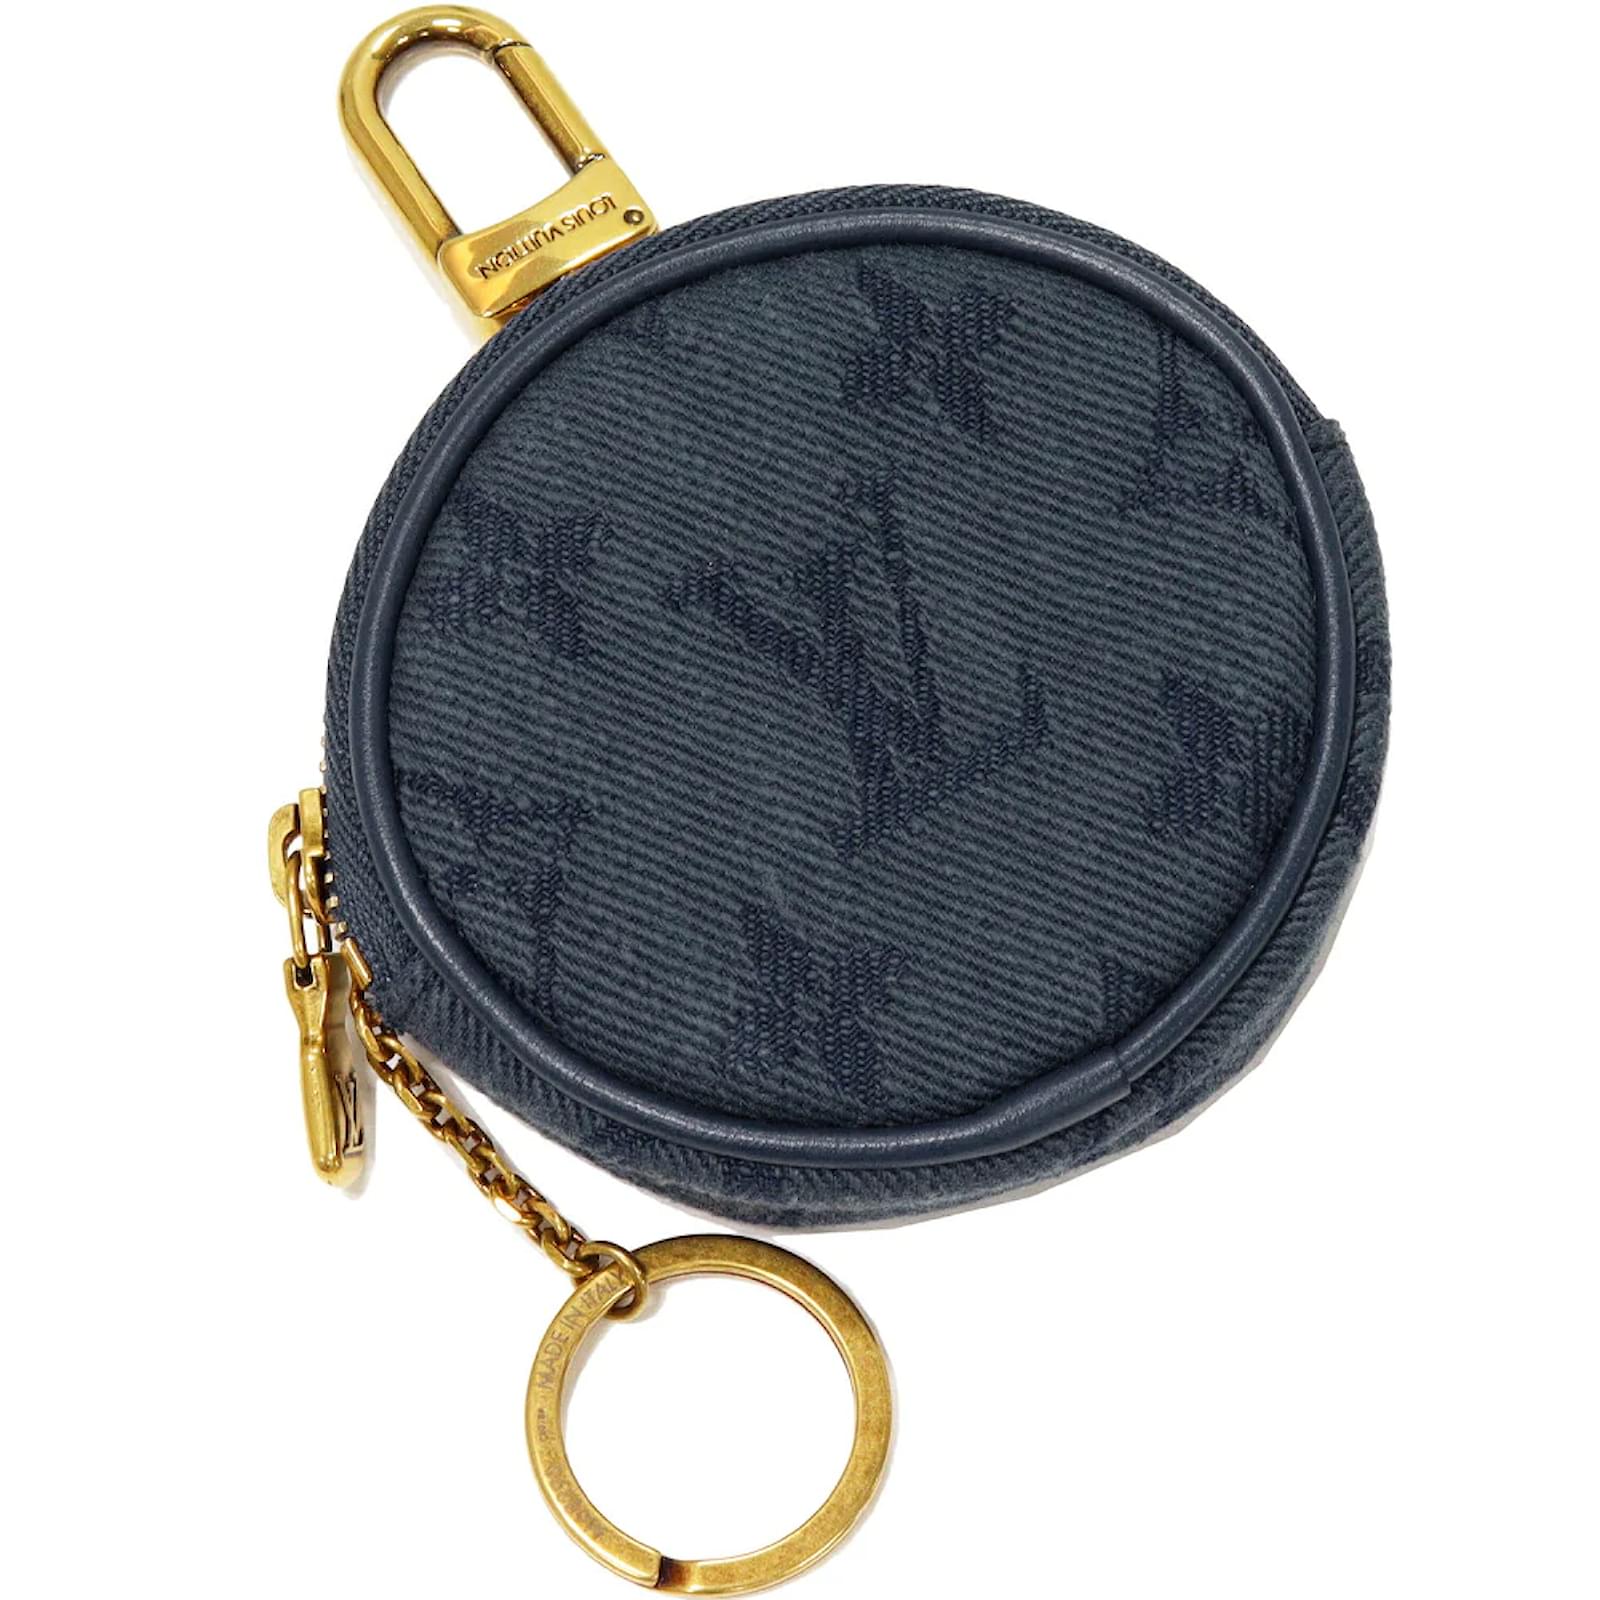 Shop Louis Vuitton ZIPPY COIN PURSE Zippy Coin Purse (N60213